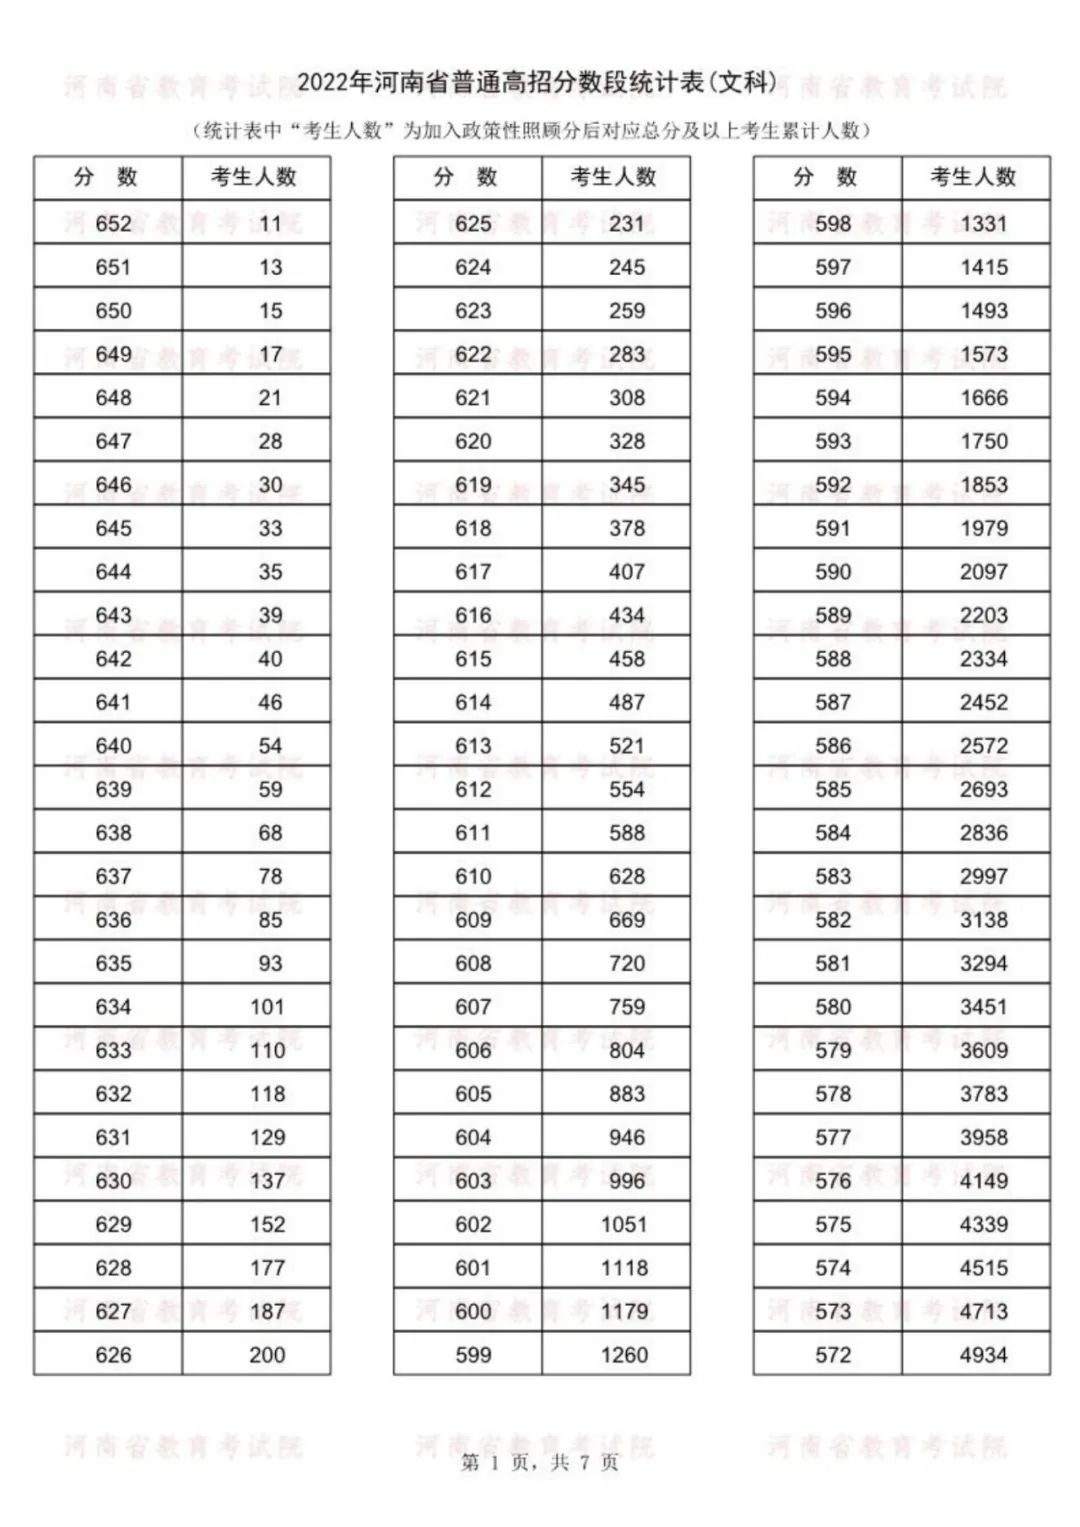 2022年河南省高考分段表